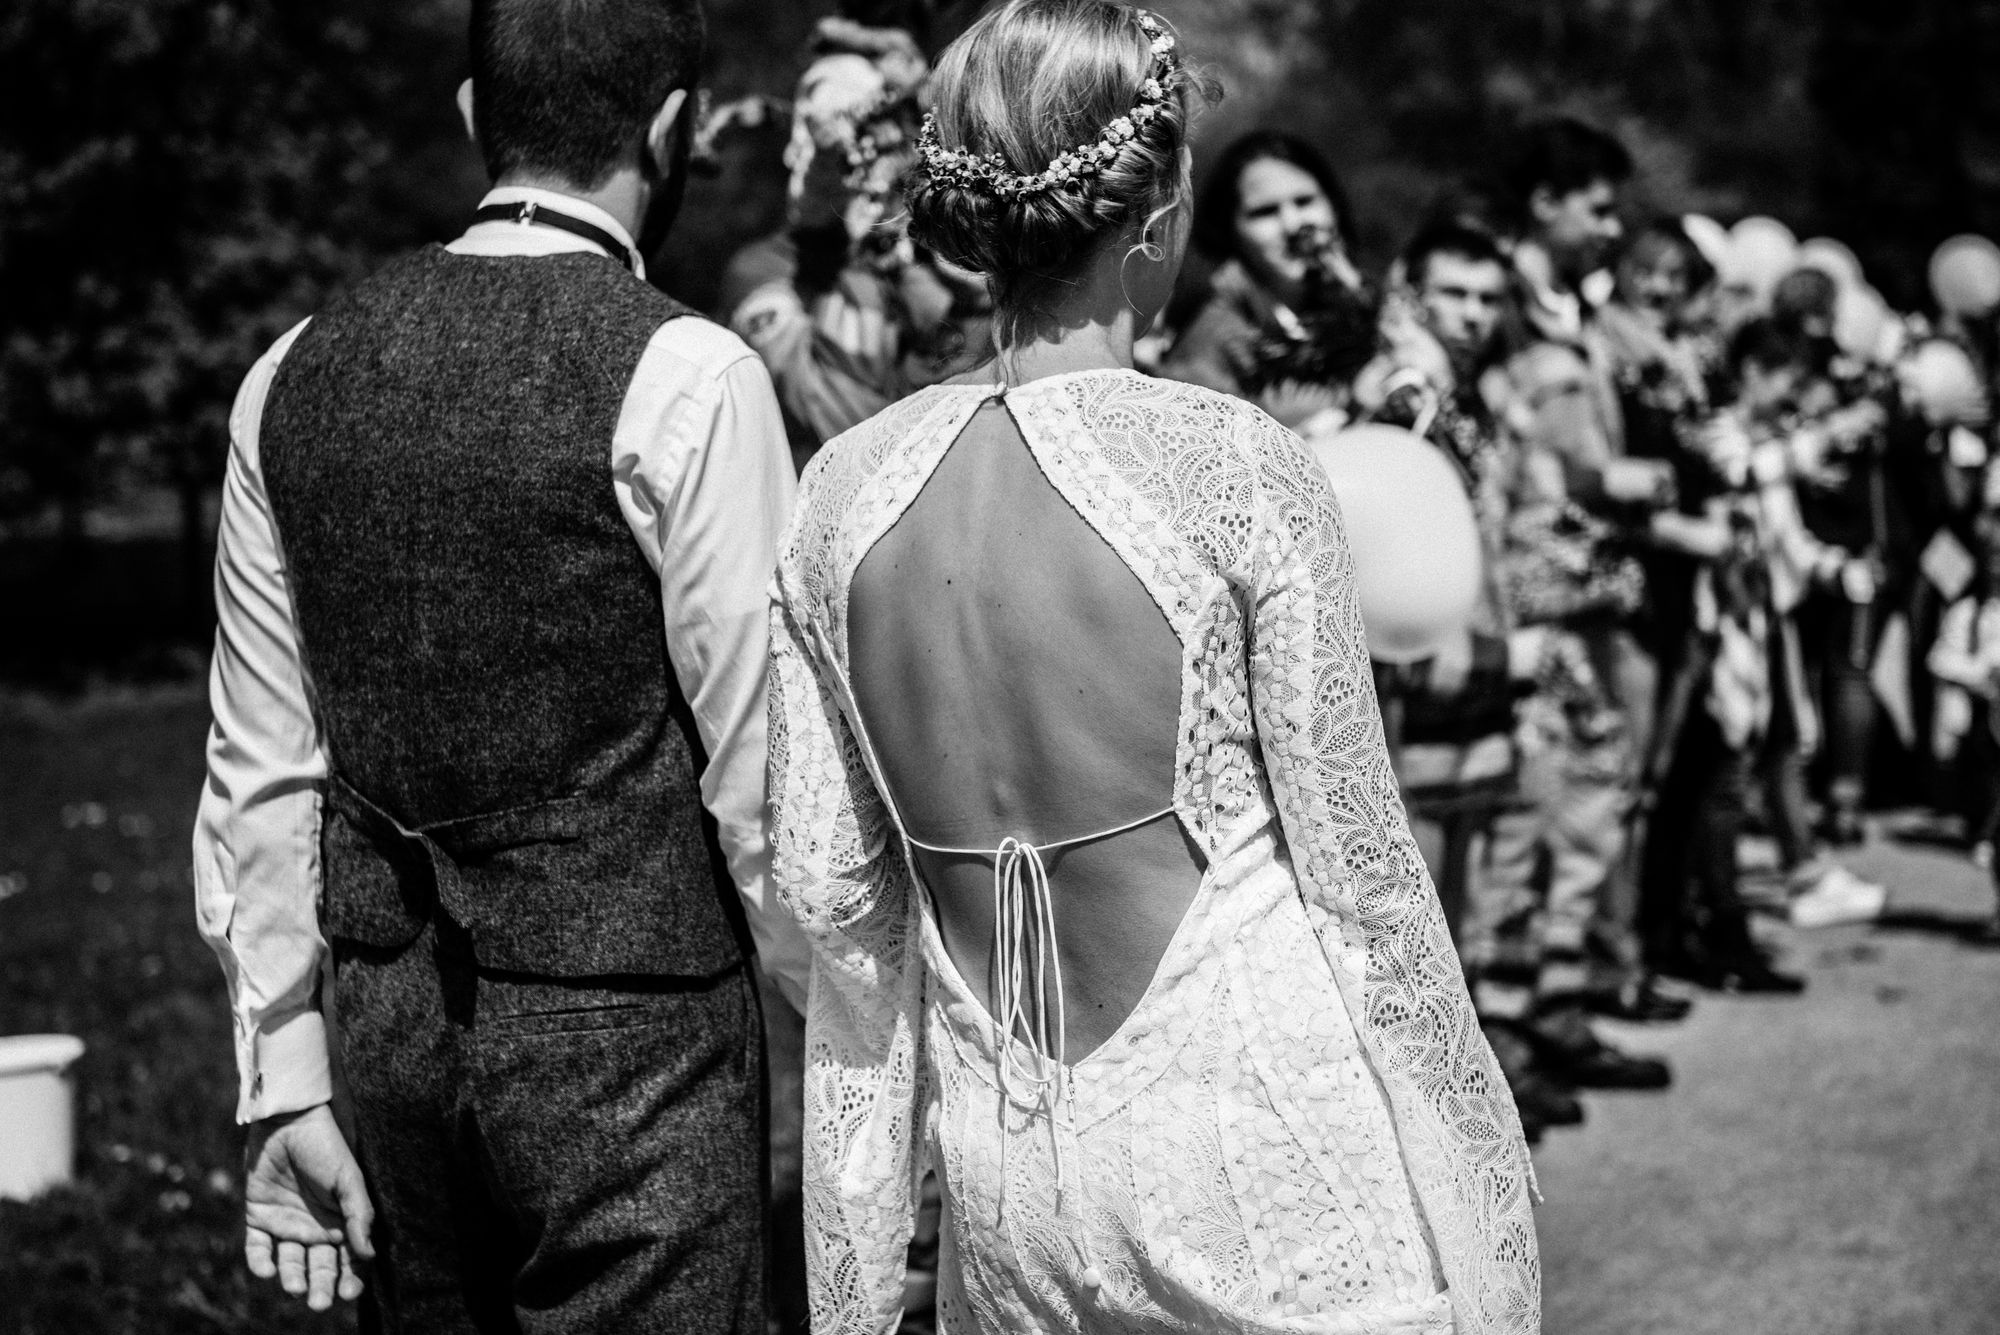 Schwarz-weiß-Aufnahme eines Brautpaares von hinten.